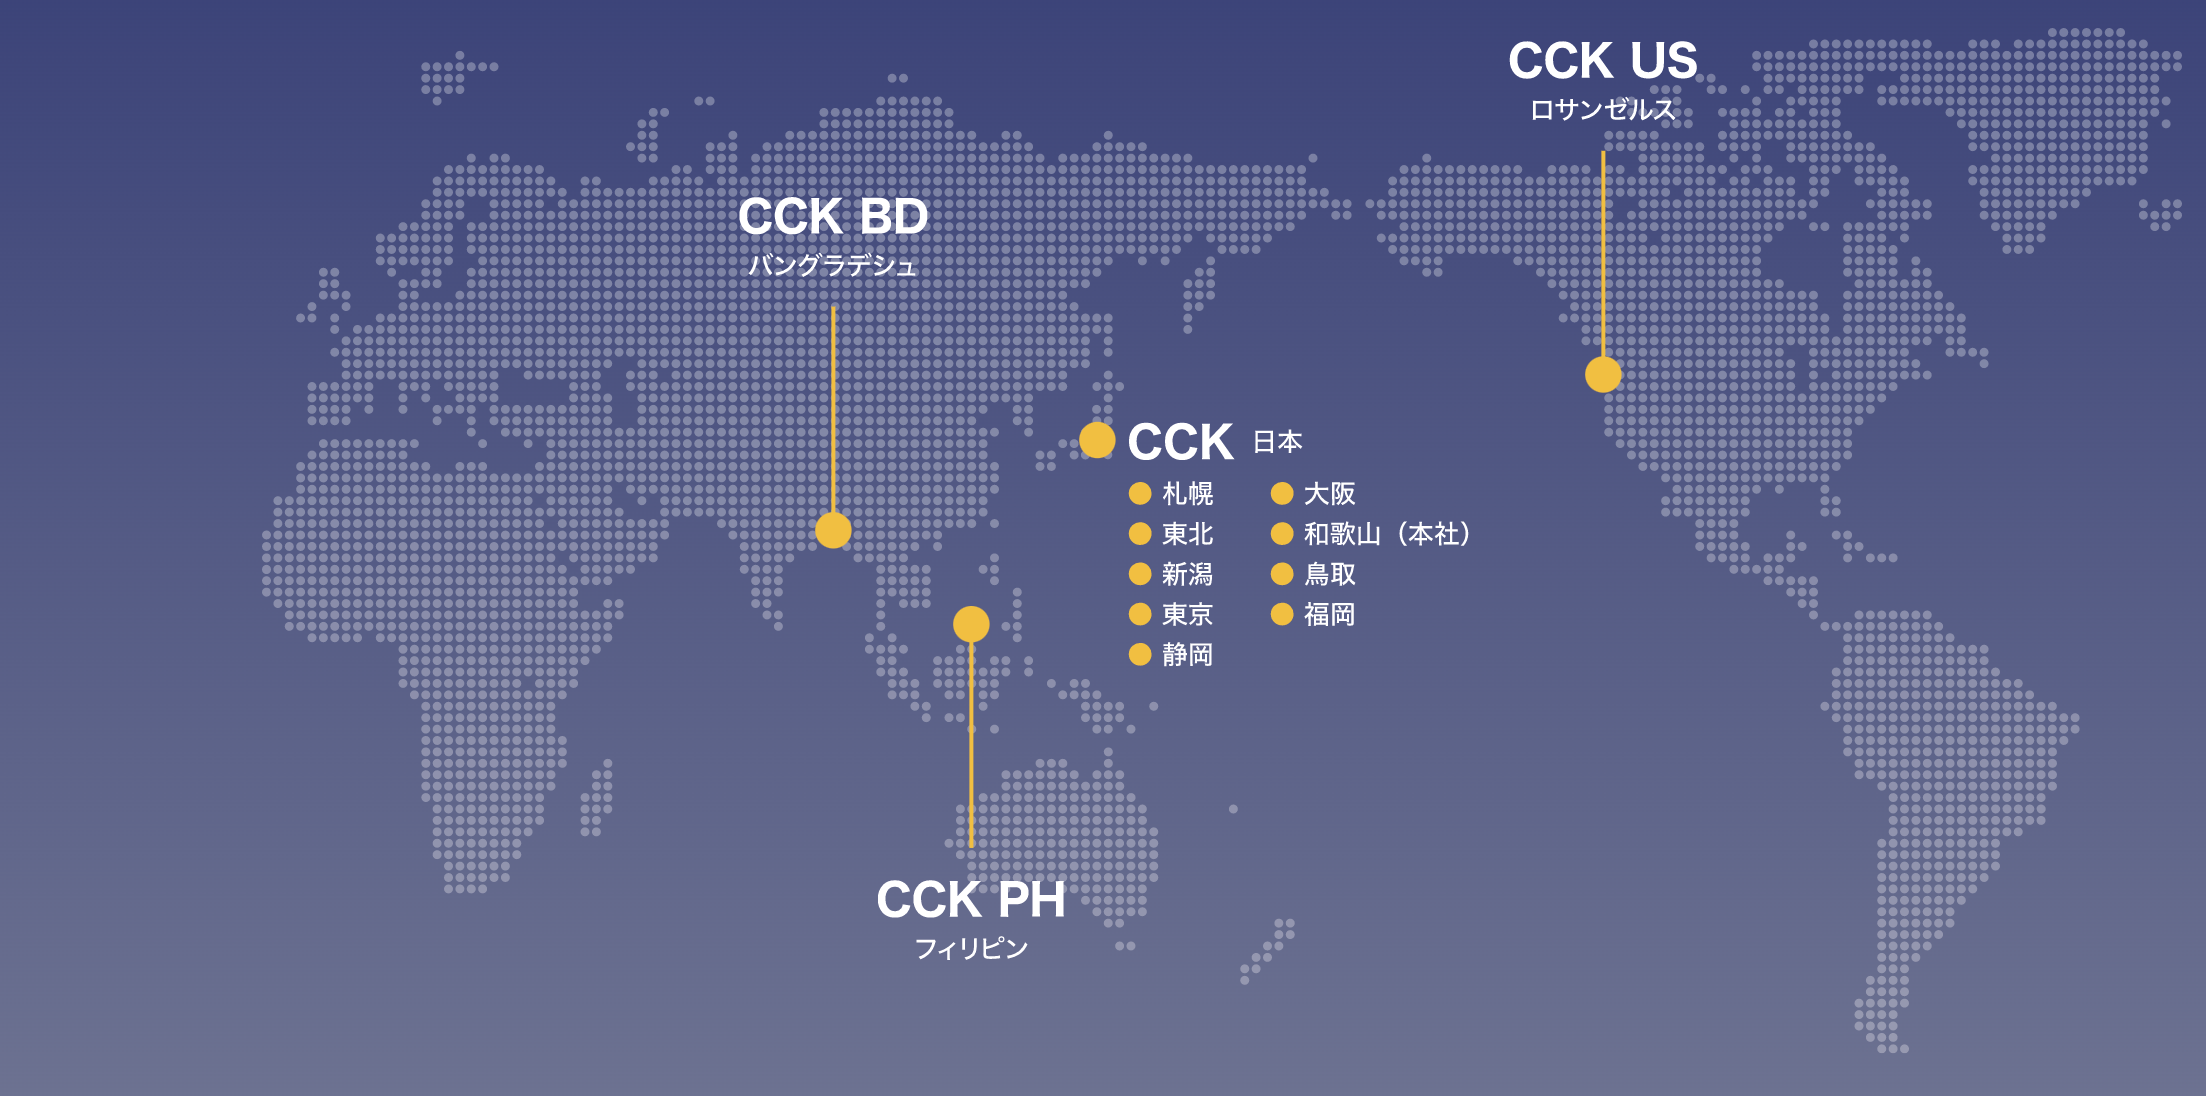 CCKのワールドワイド・ロケーション。
私たちは､さらなるサービスの向上を目指し､
世界を視野にビジネスを展開しています。